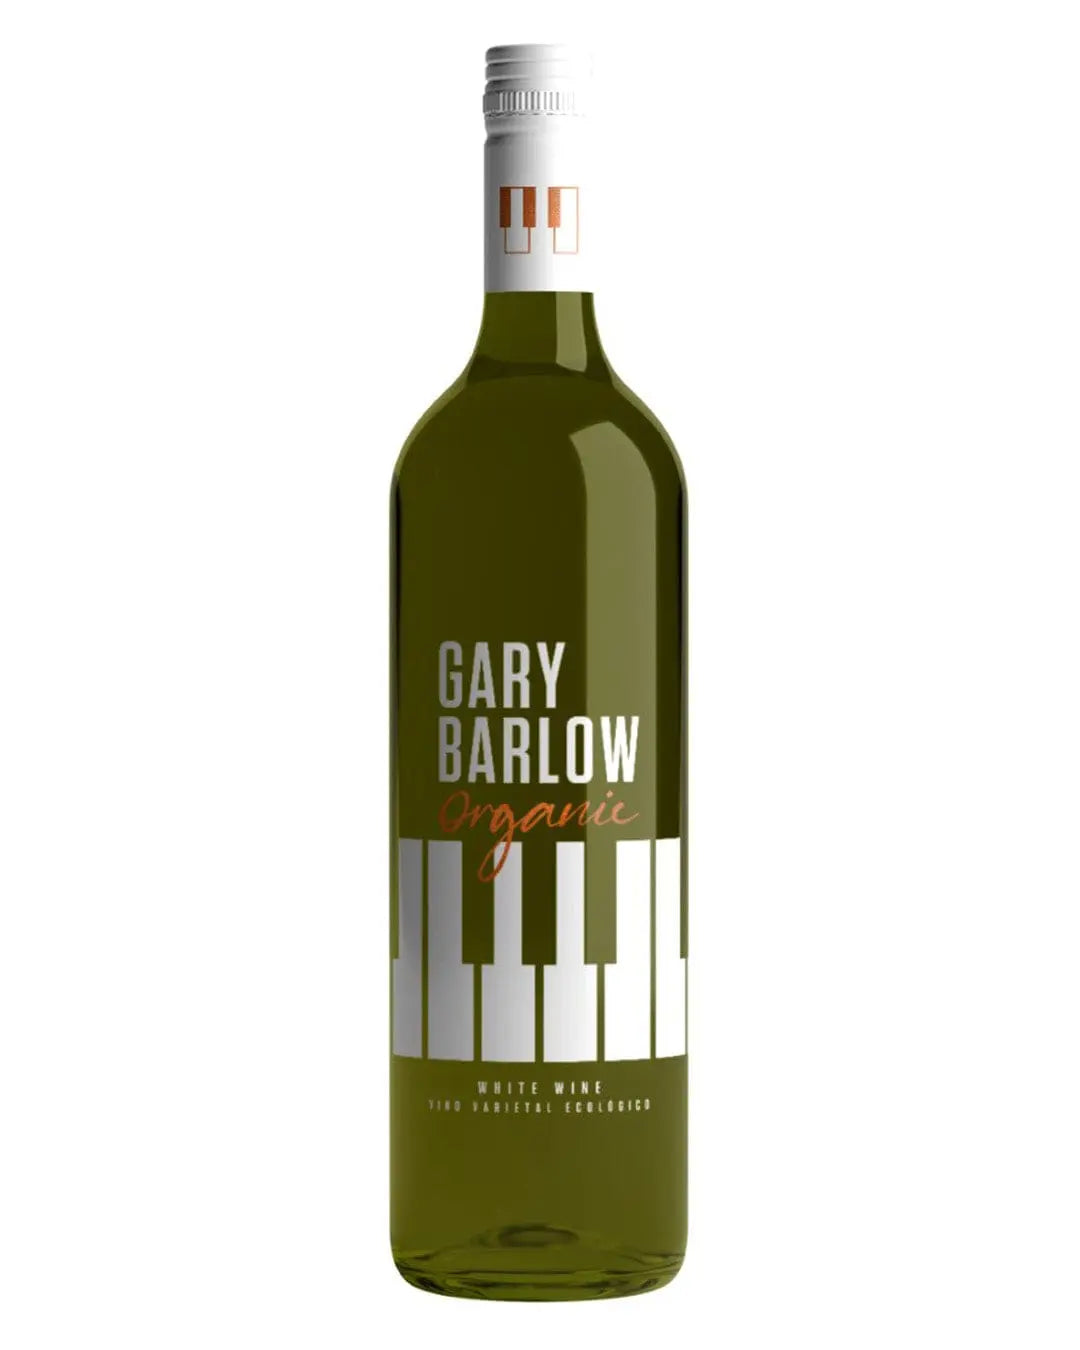 Gary Barlow Organic White Wine, 75 cl White Wine